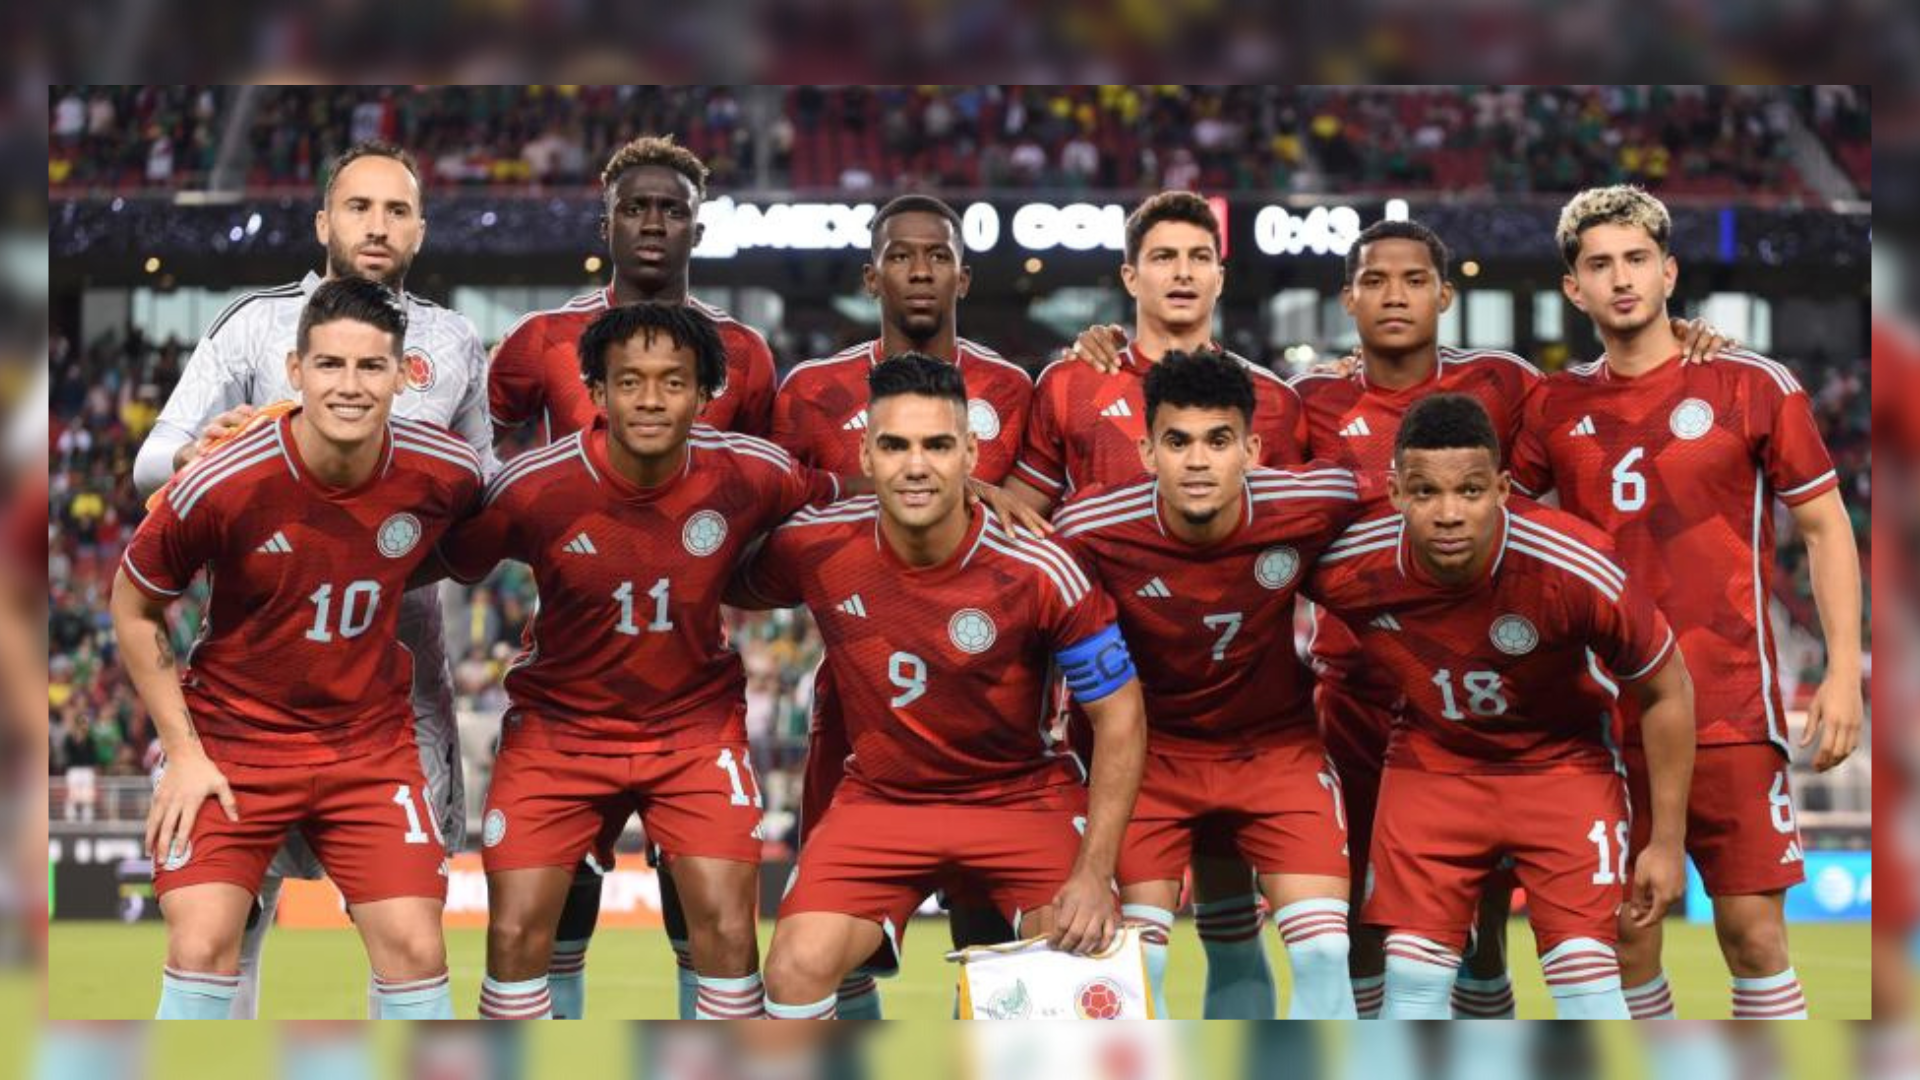 La selección Colombia iniciará un proceso largo de cara a la próxima Copa América 2024 y las eliminatorias al mundial 2026. Imagen: @FCFSeleccionCol.